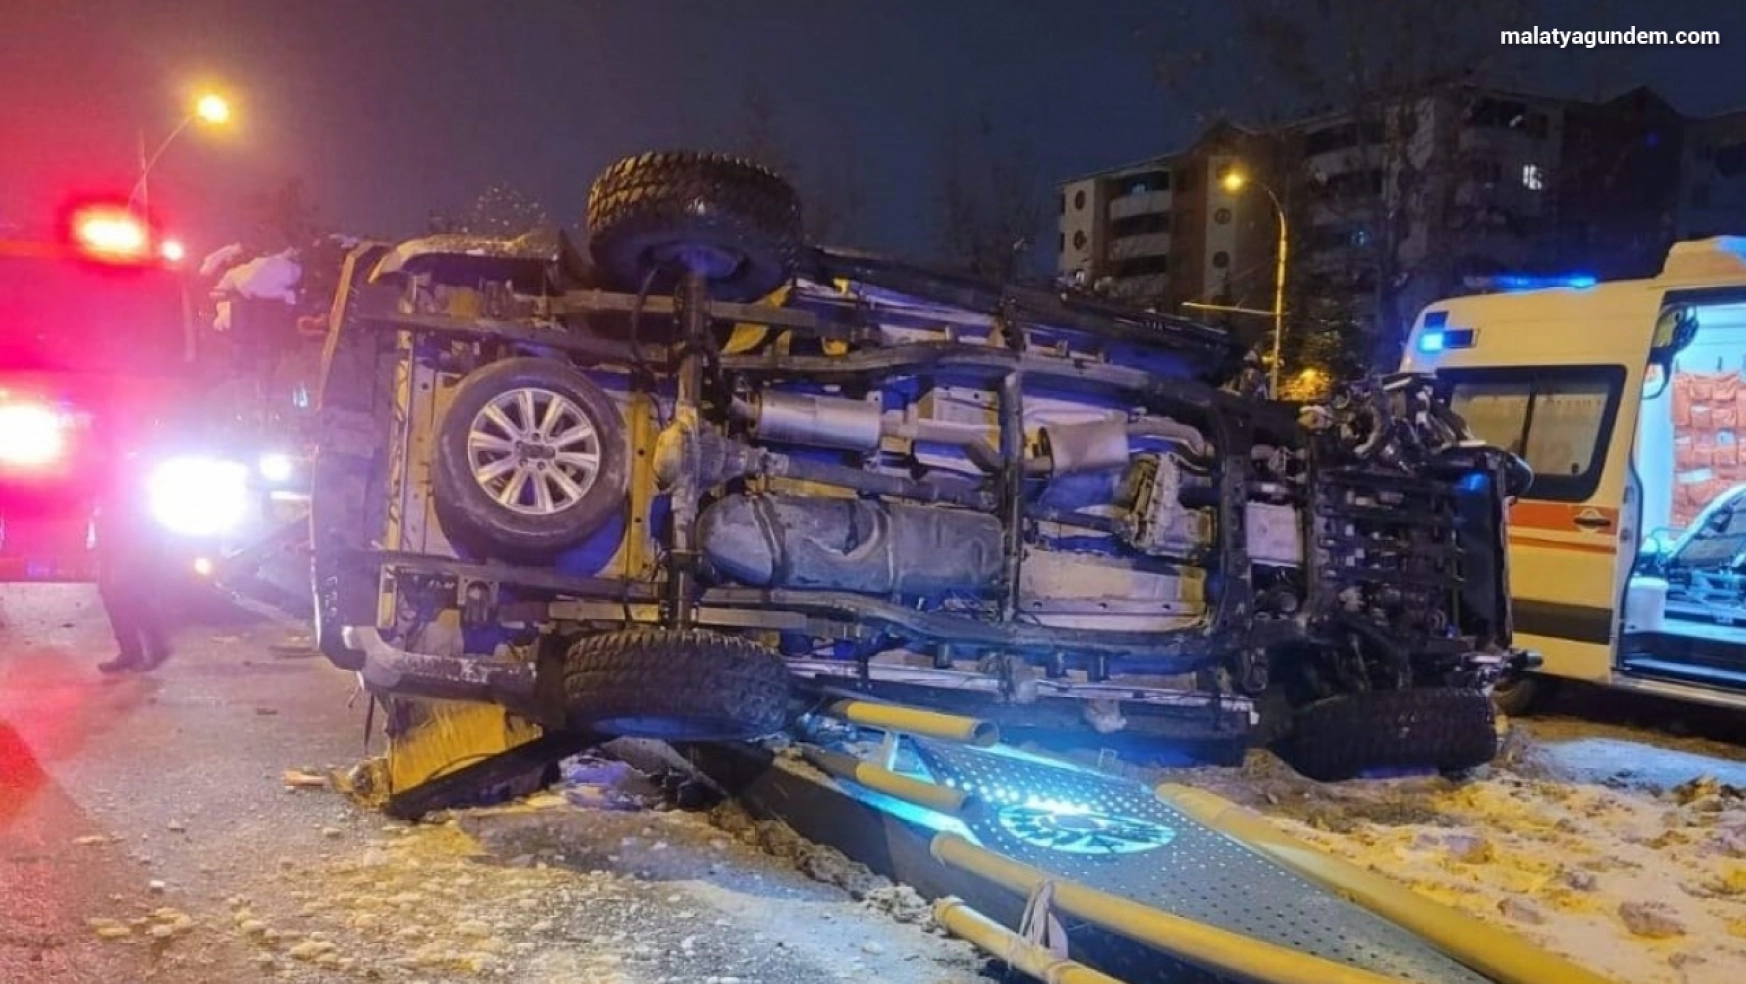 Malatya'da feci kaza: 1'i ağır 2 yaralı